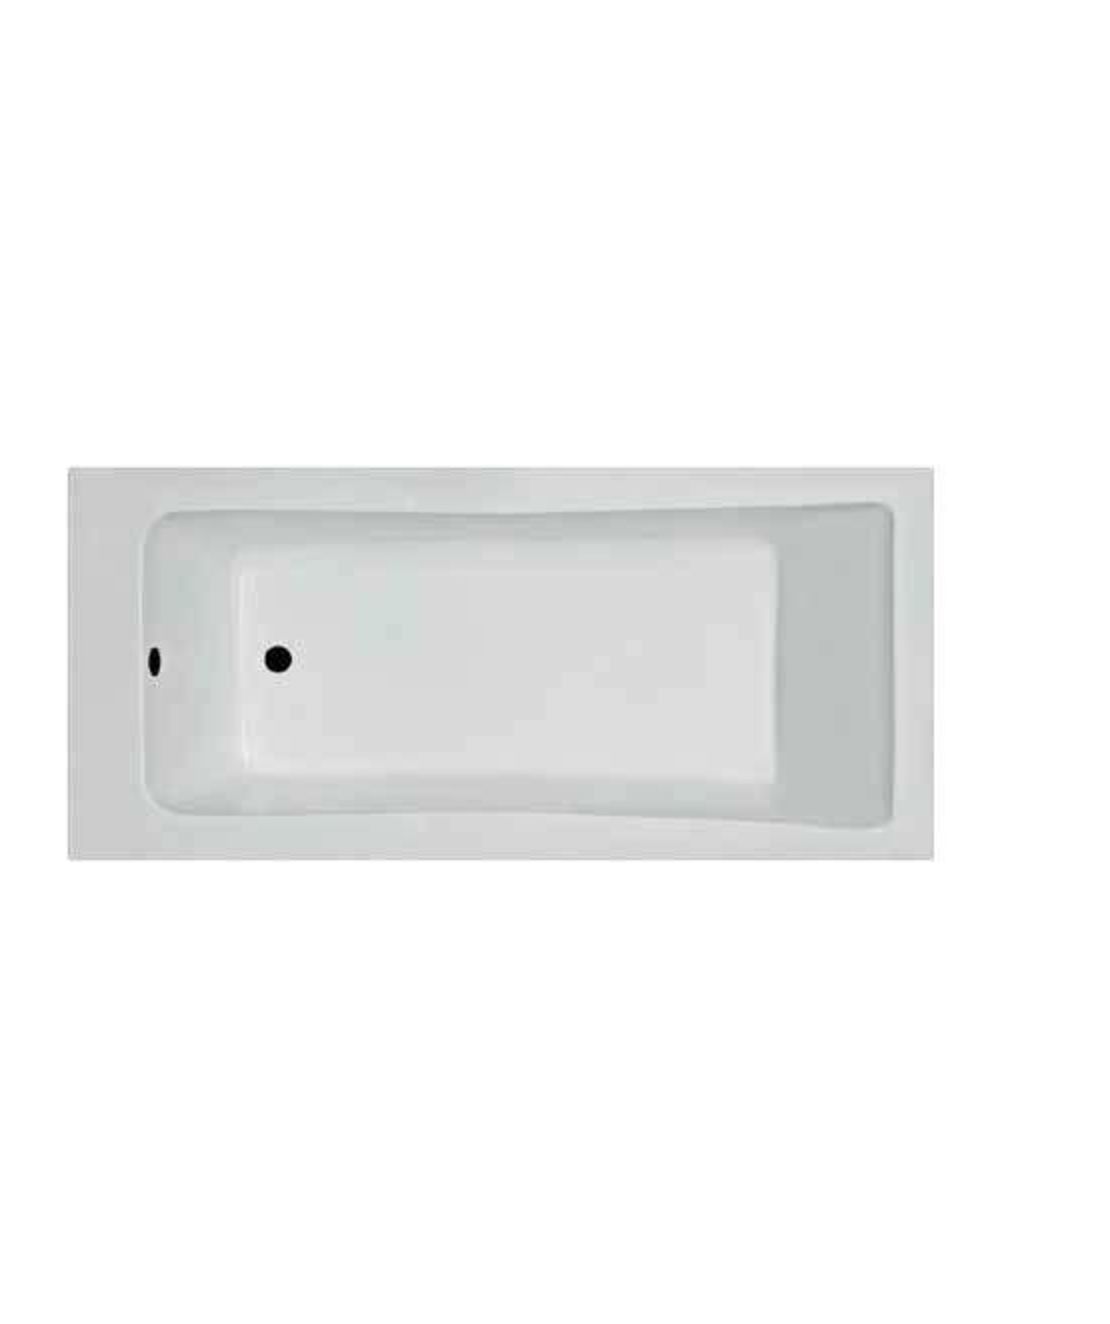 ע- אמבטיה אקרילית לבנה 160 * 70 דגם אוריון פרופילון PR468060